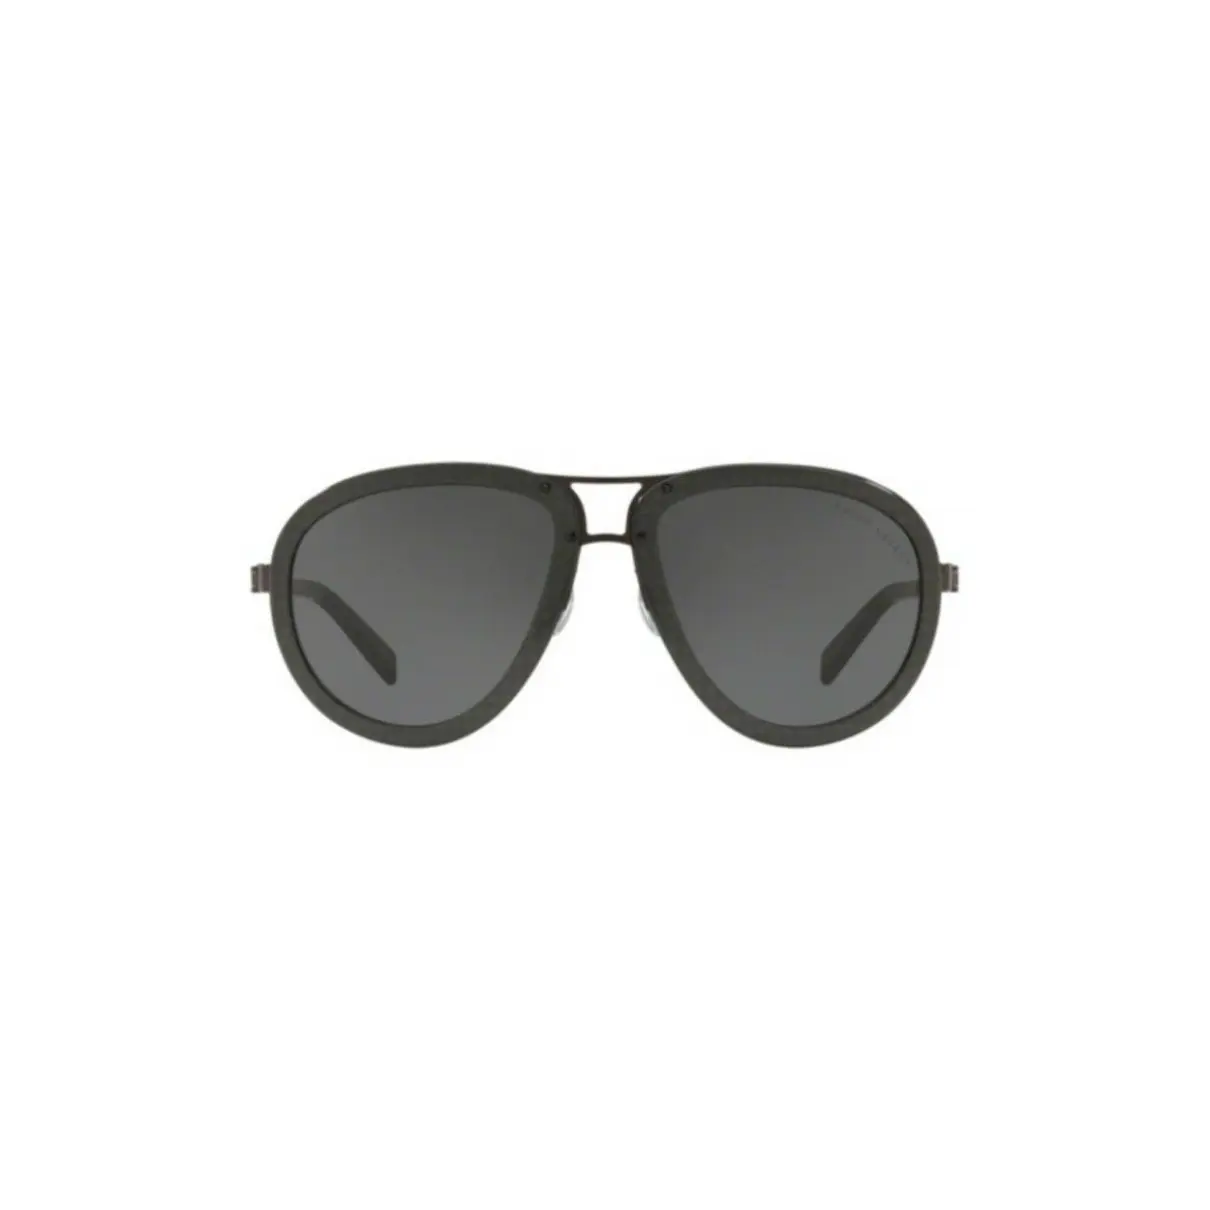 Luxury Ralph Lauren Sunglasses Men